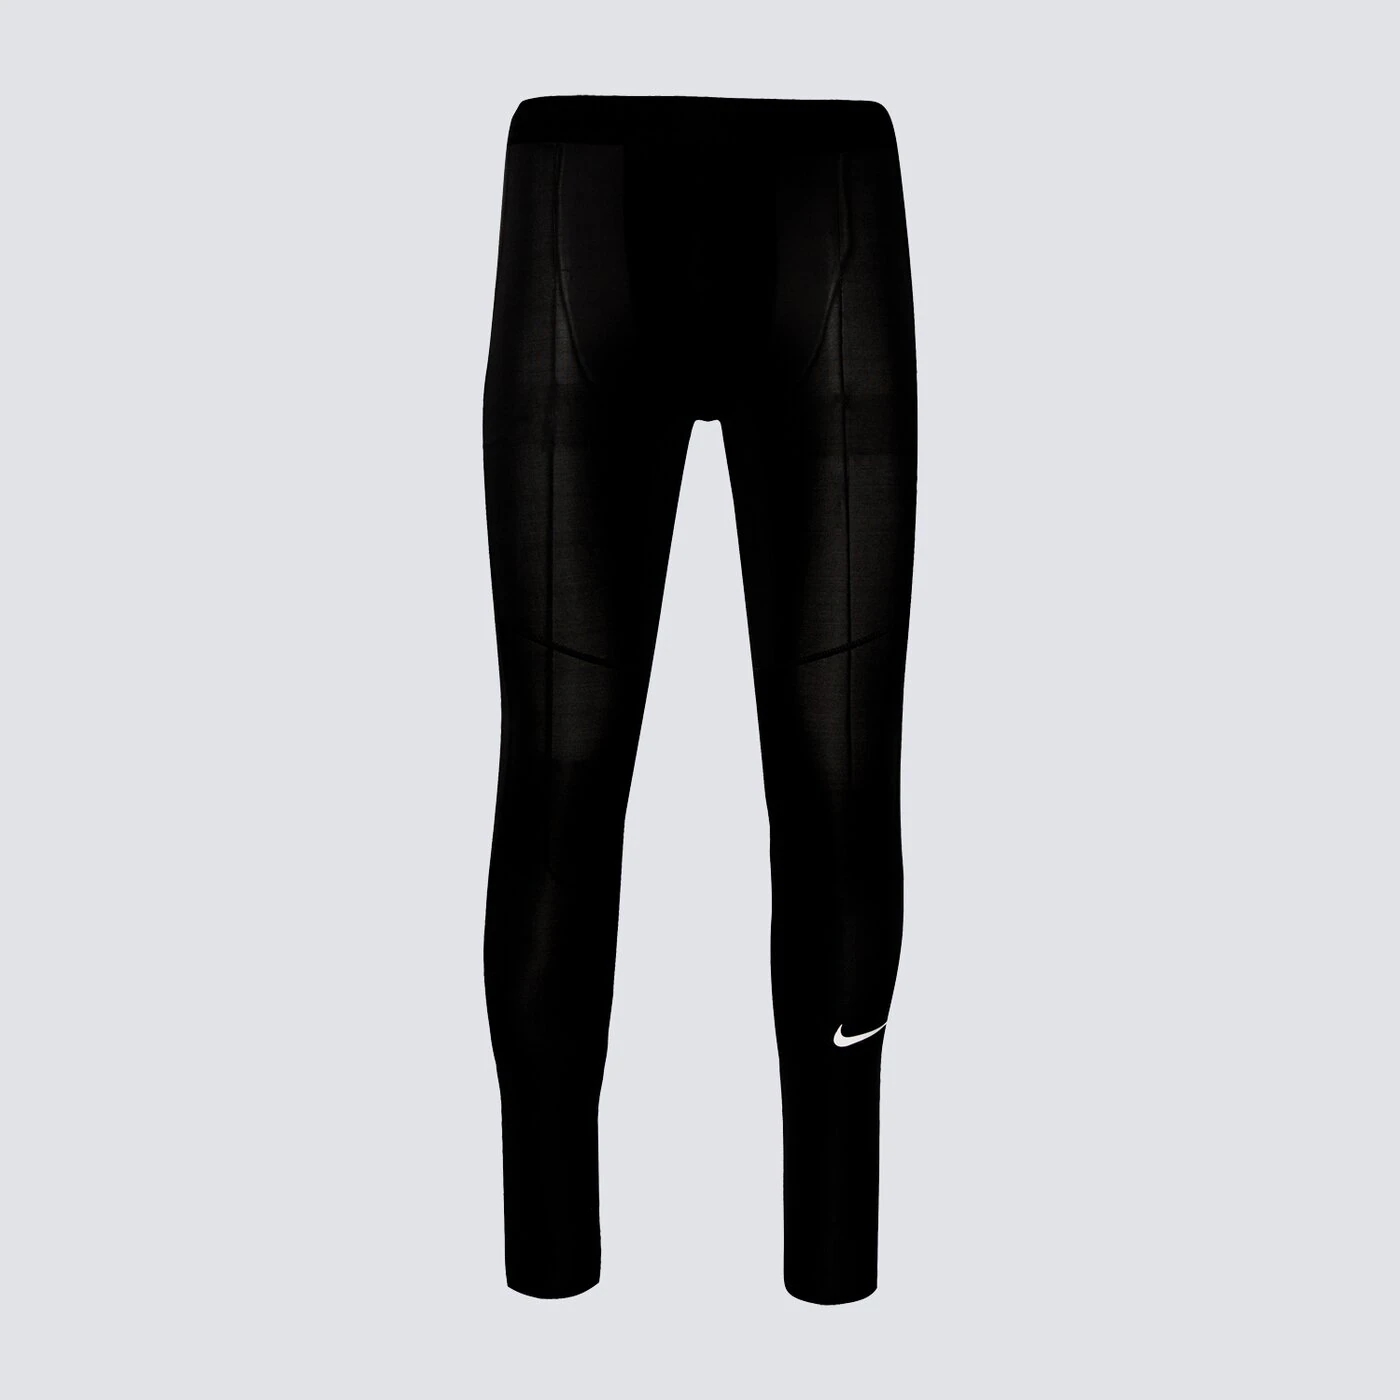 Леггинсы Nike Tight, черный леггинсы хлопковые nike performance one 7 8 tight черный